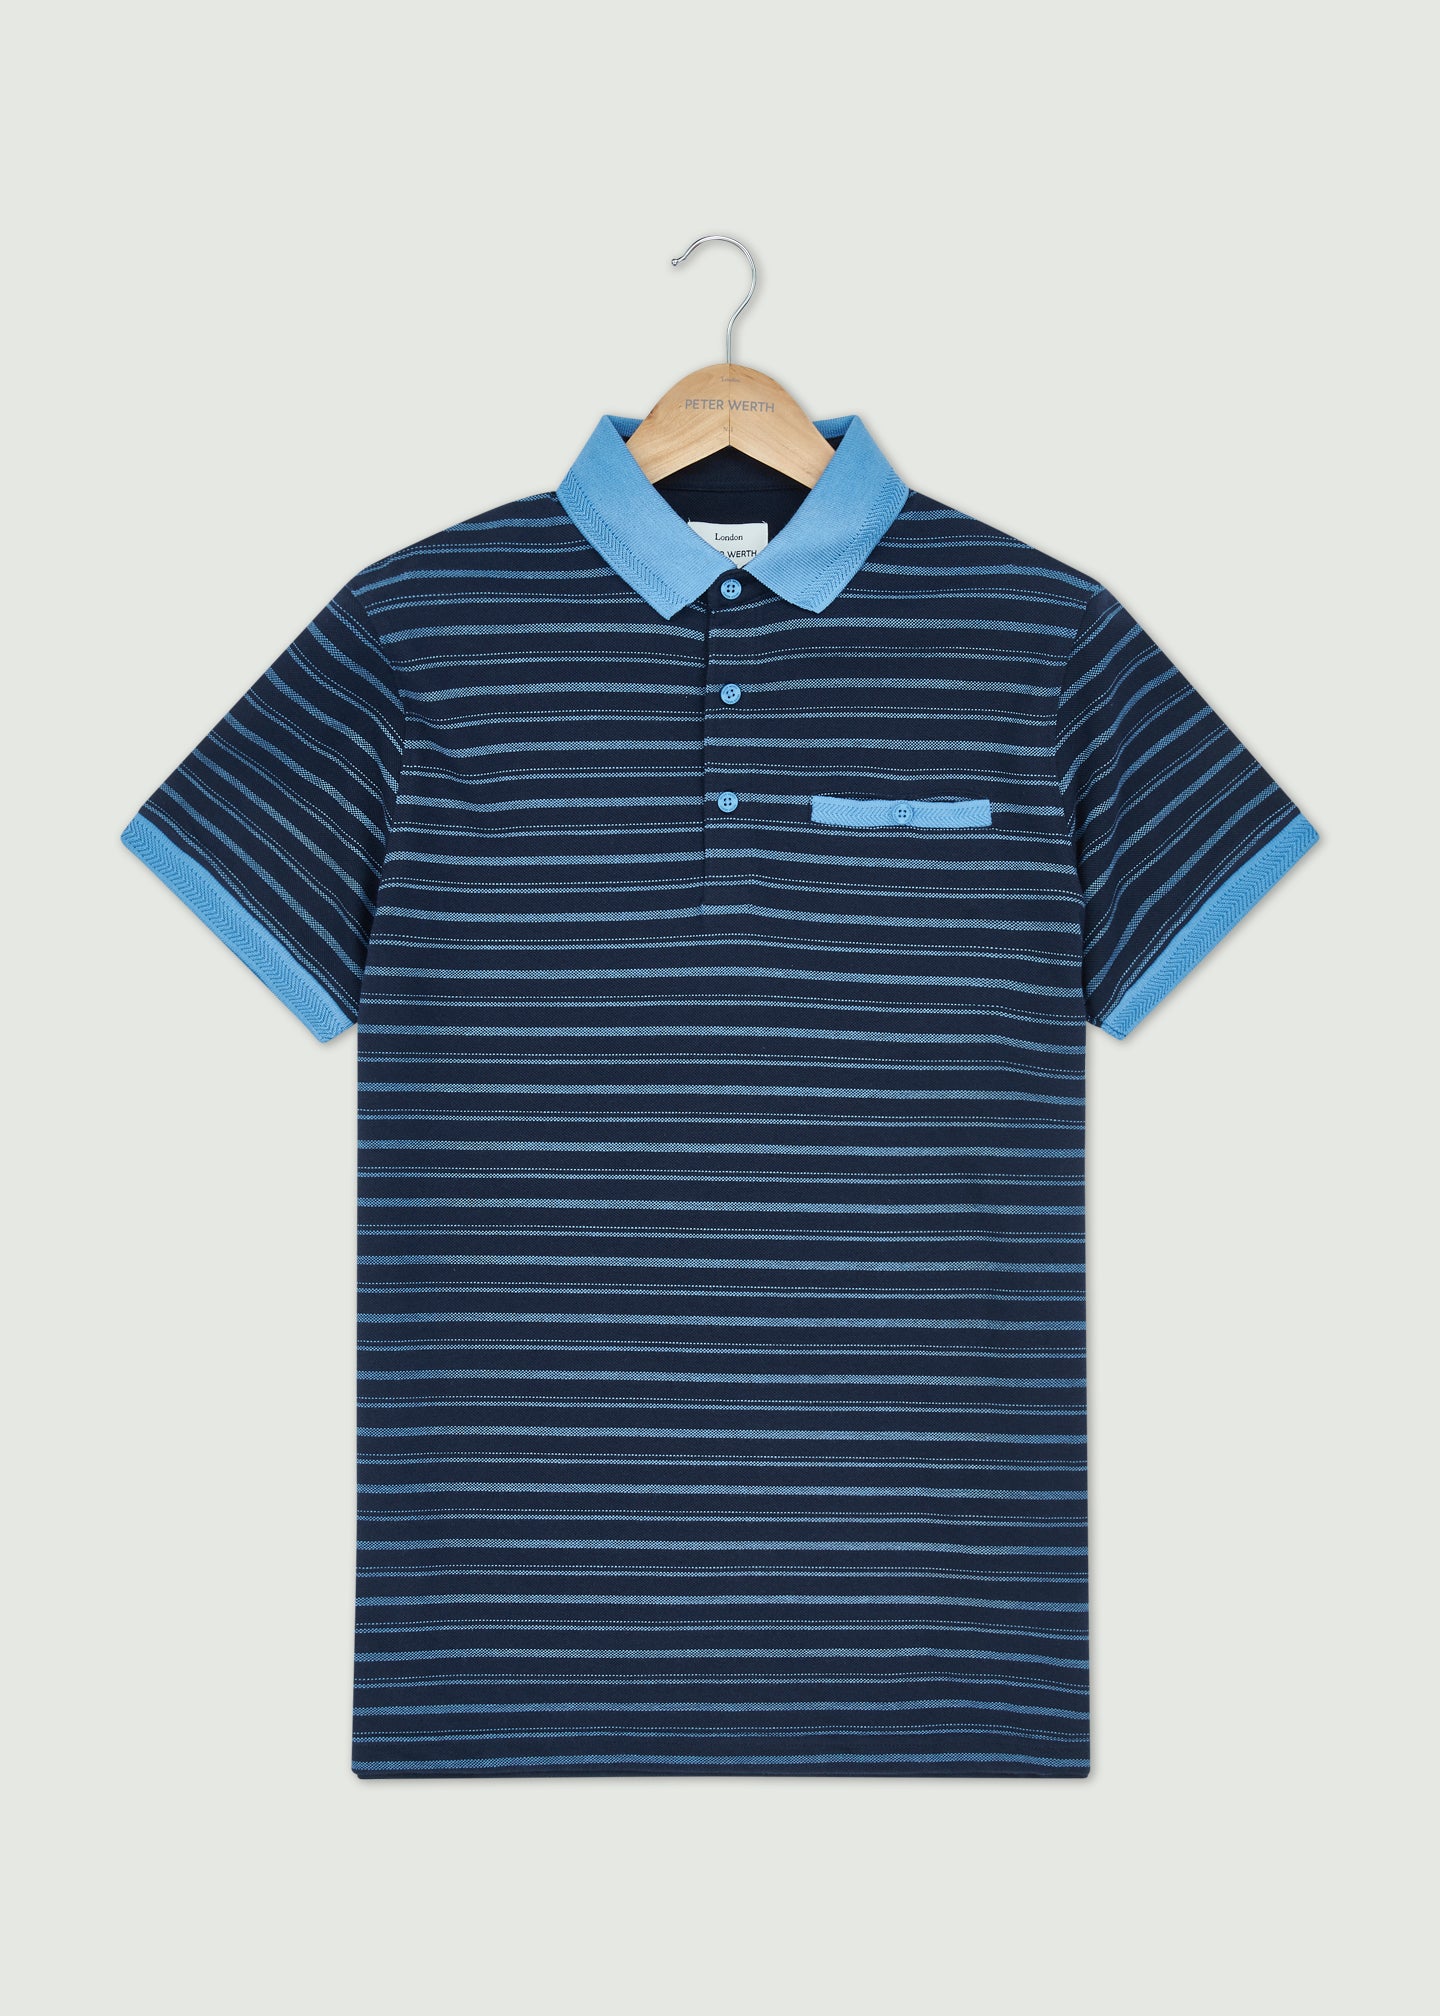 Keppel Polo Shirt - Navy/Blue